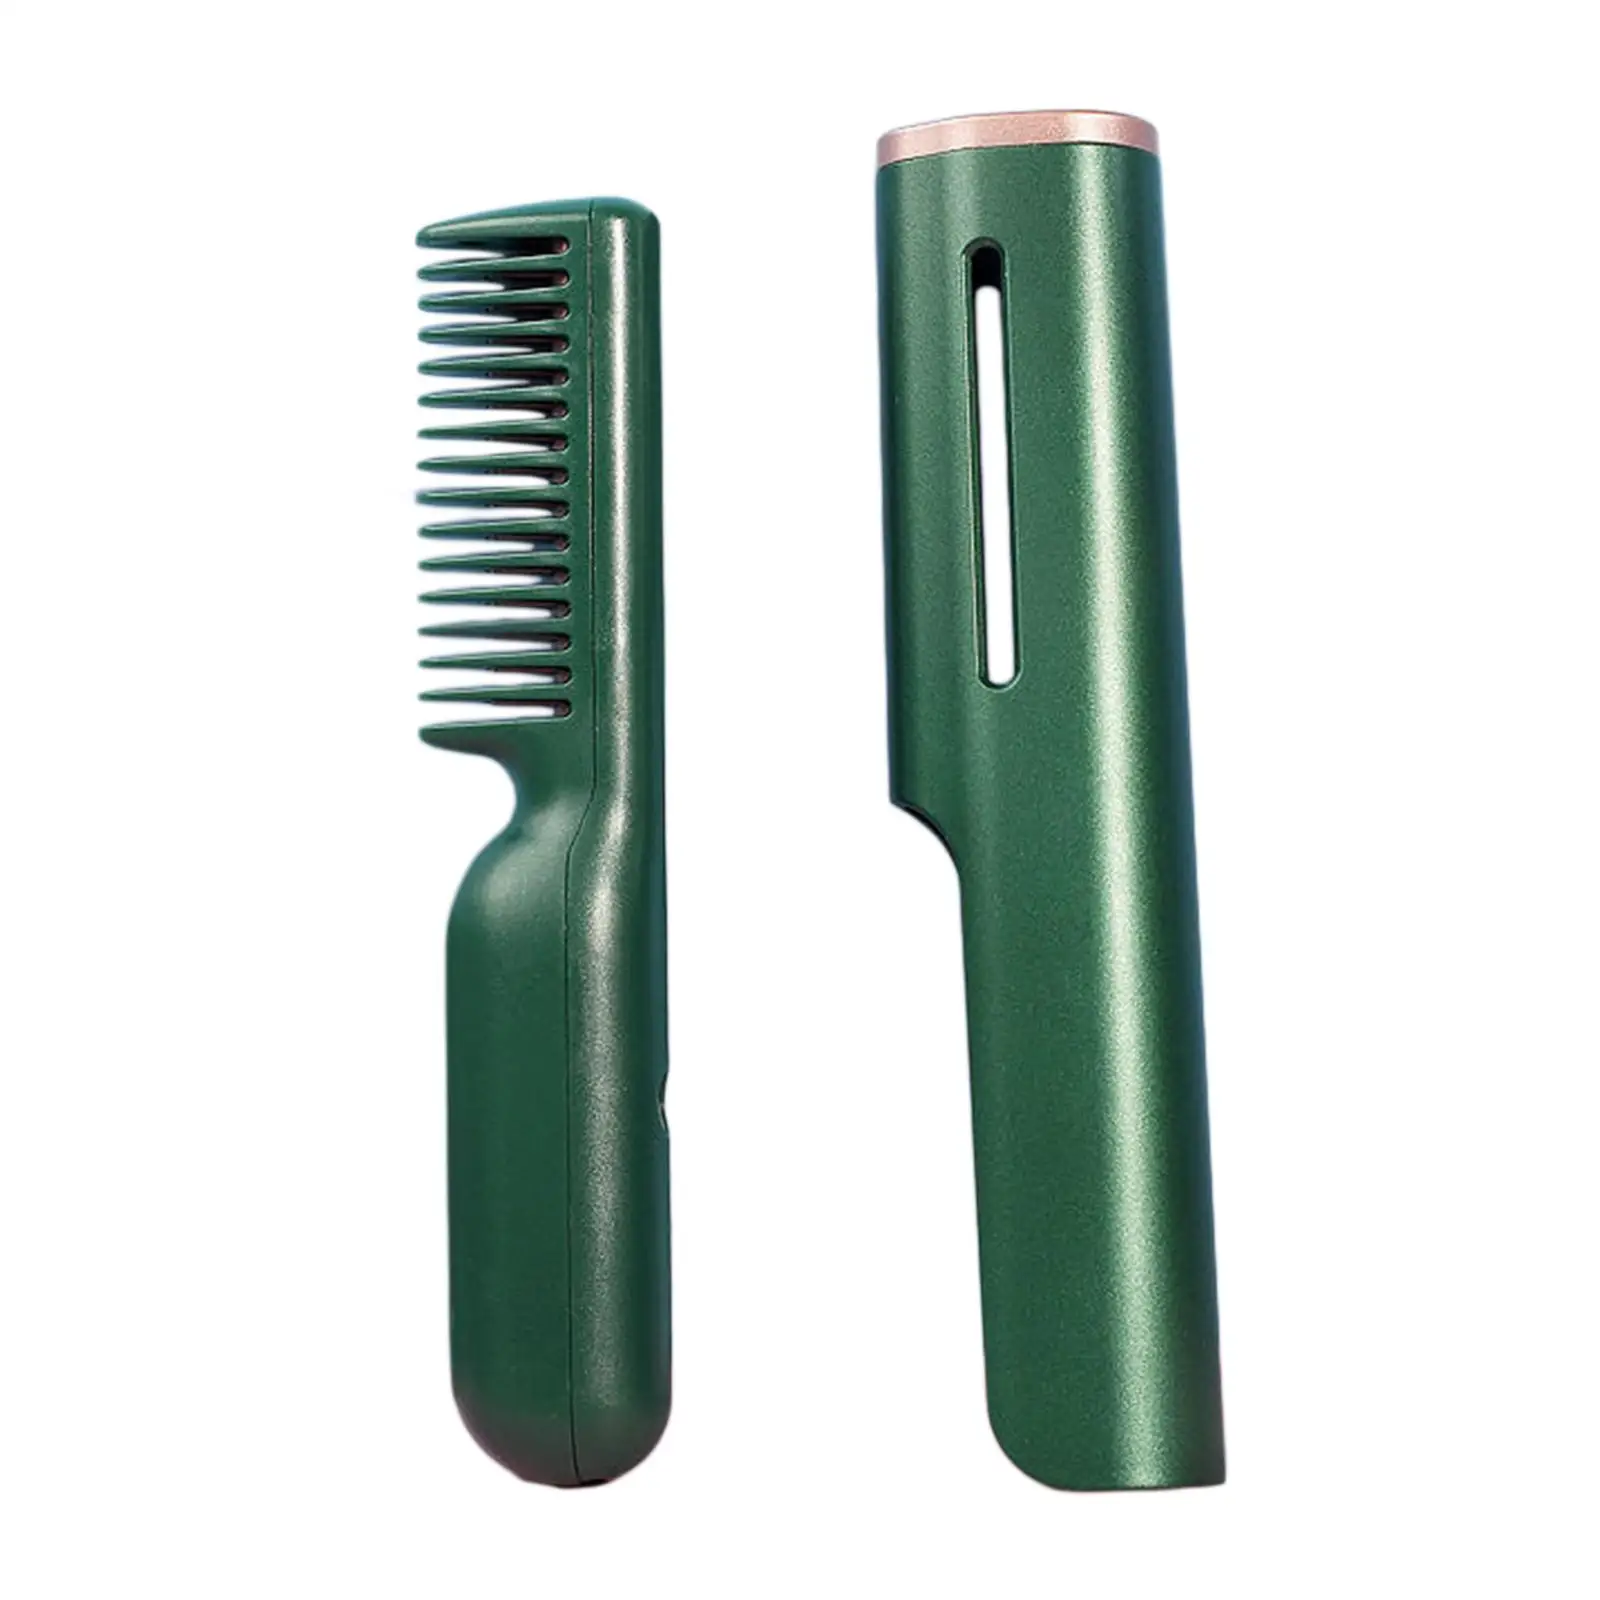 Cordless Hair Straightener Brush Fast Heating Portable Hair Straightening Iron Heated Hair Straightener Comb Straightening Brush